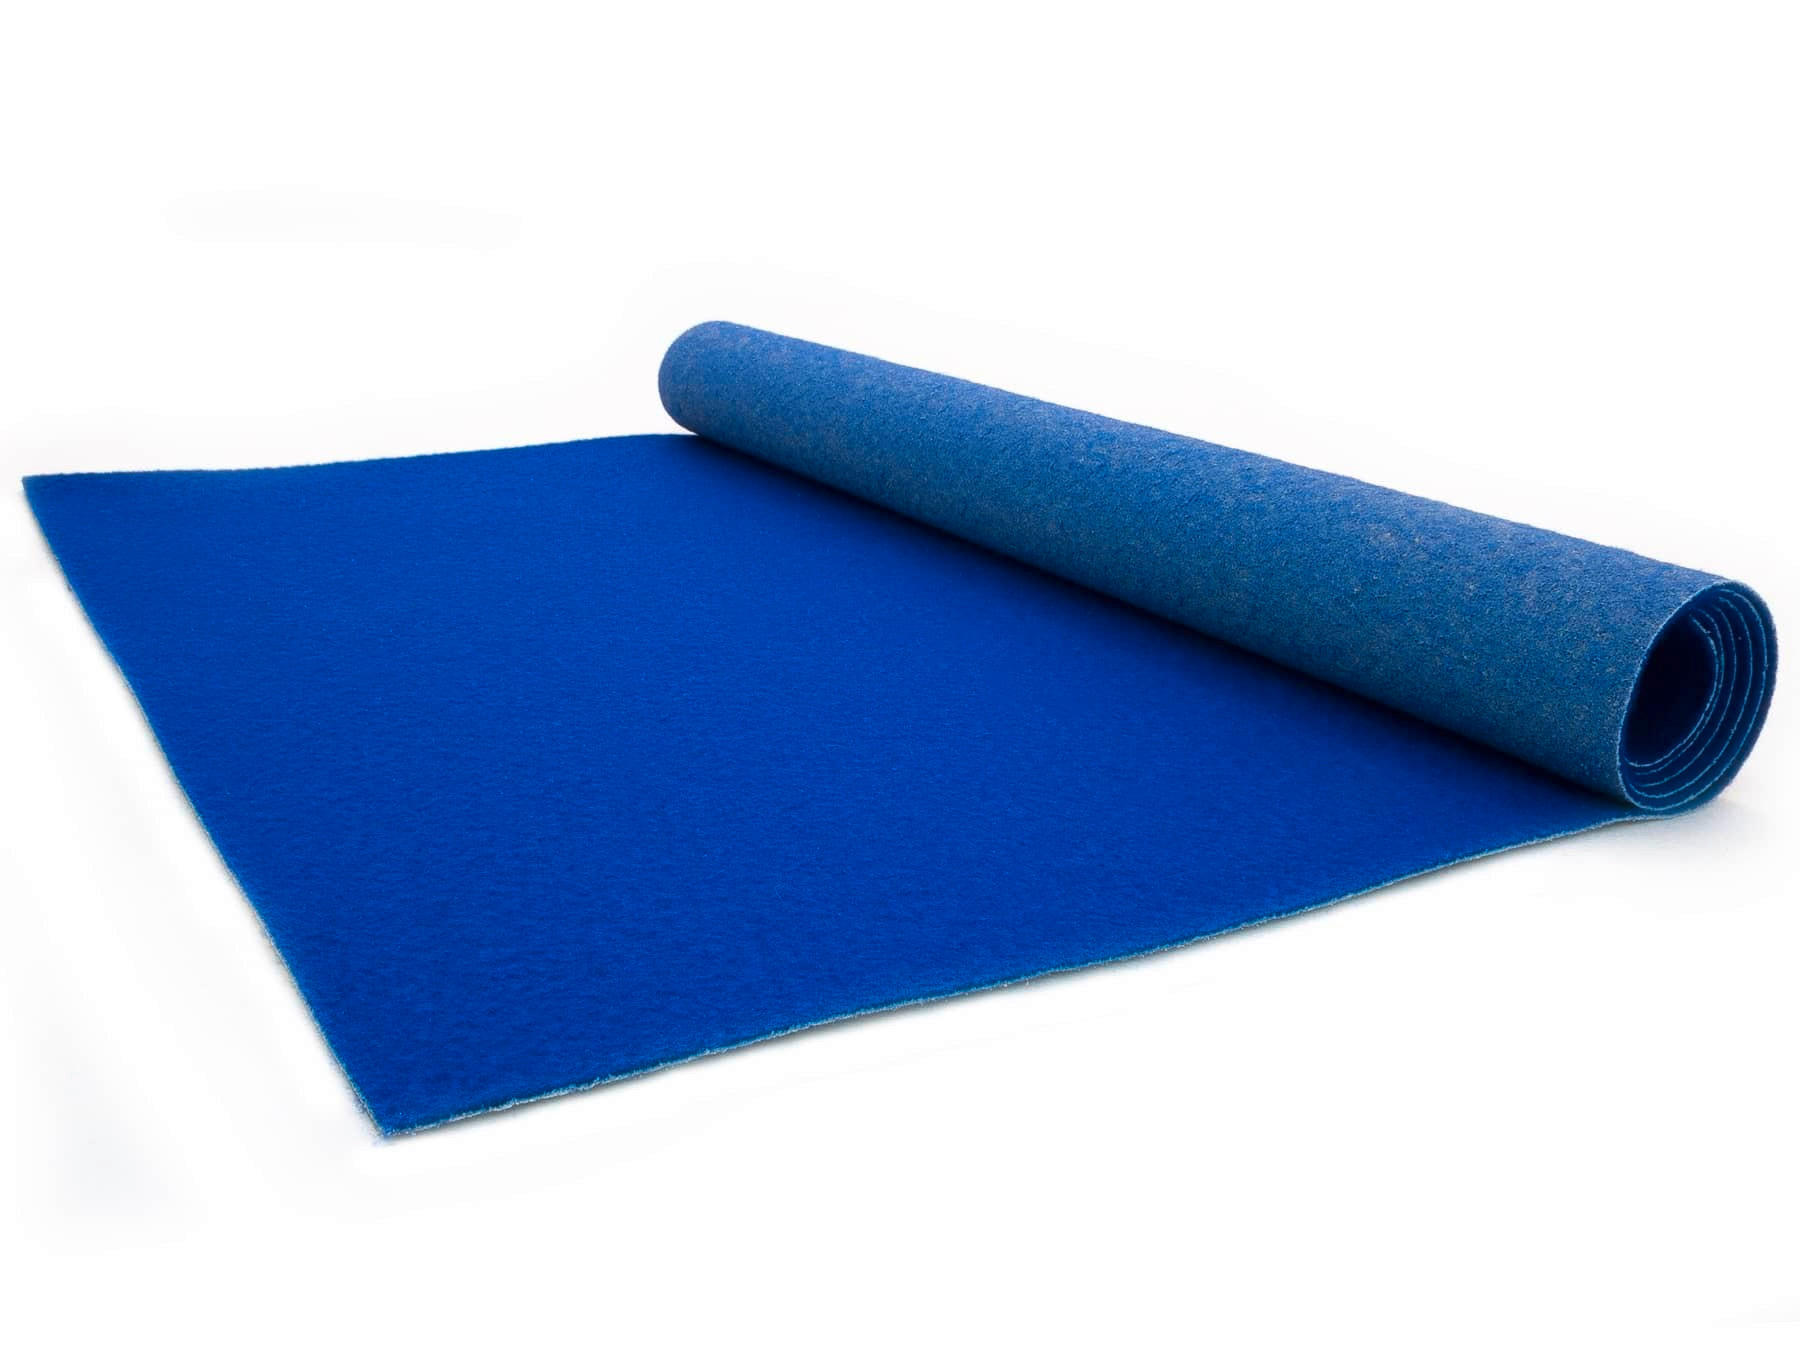 LÄUFER 100/2900 cm Platea  - Blau, Basics, Textil (100/2900cm)